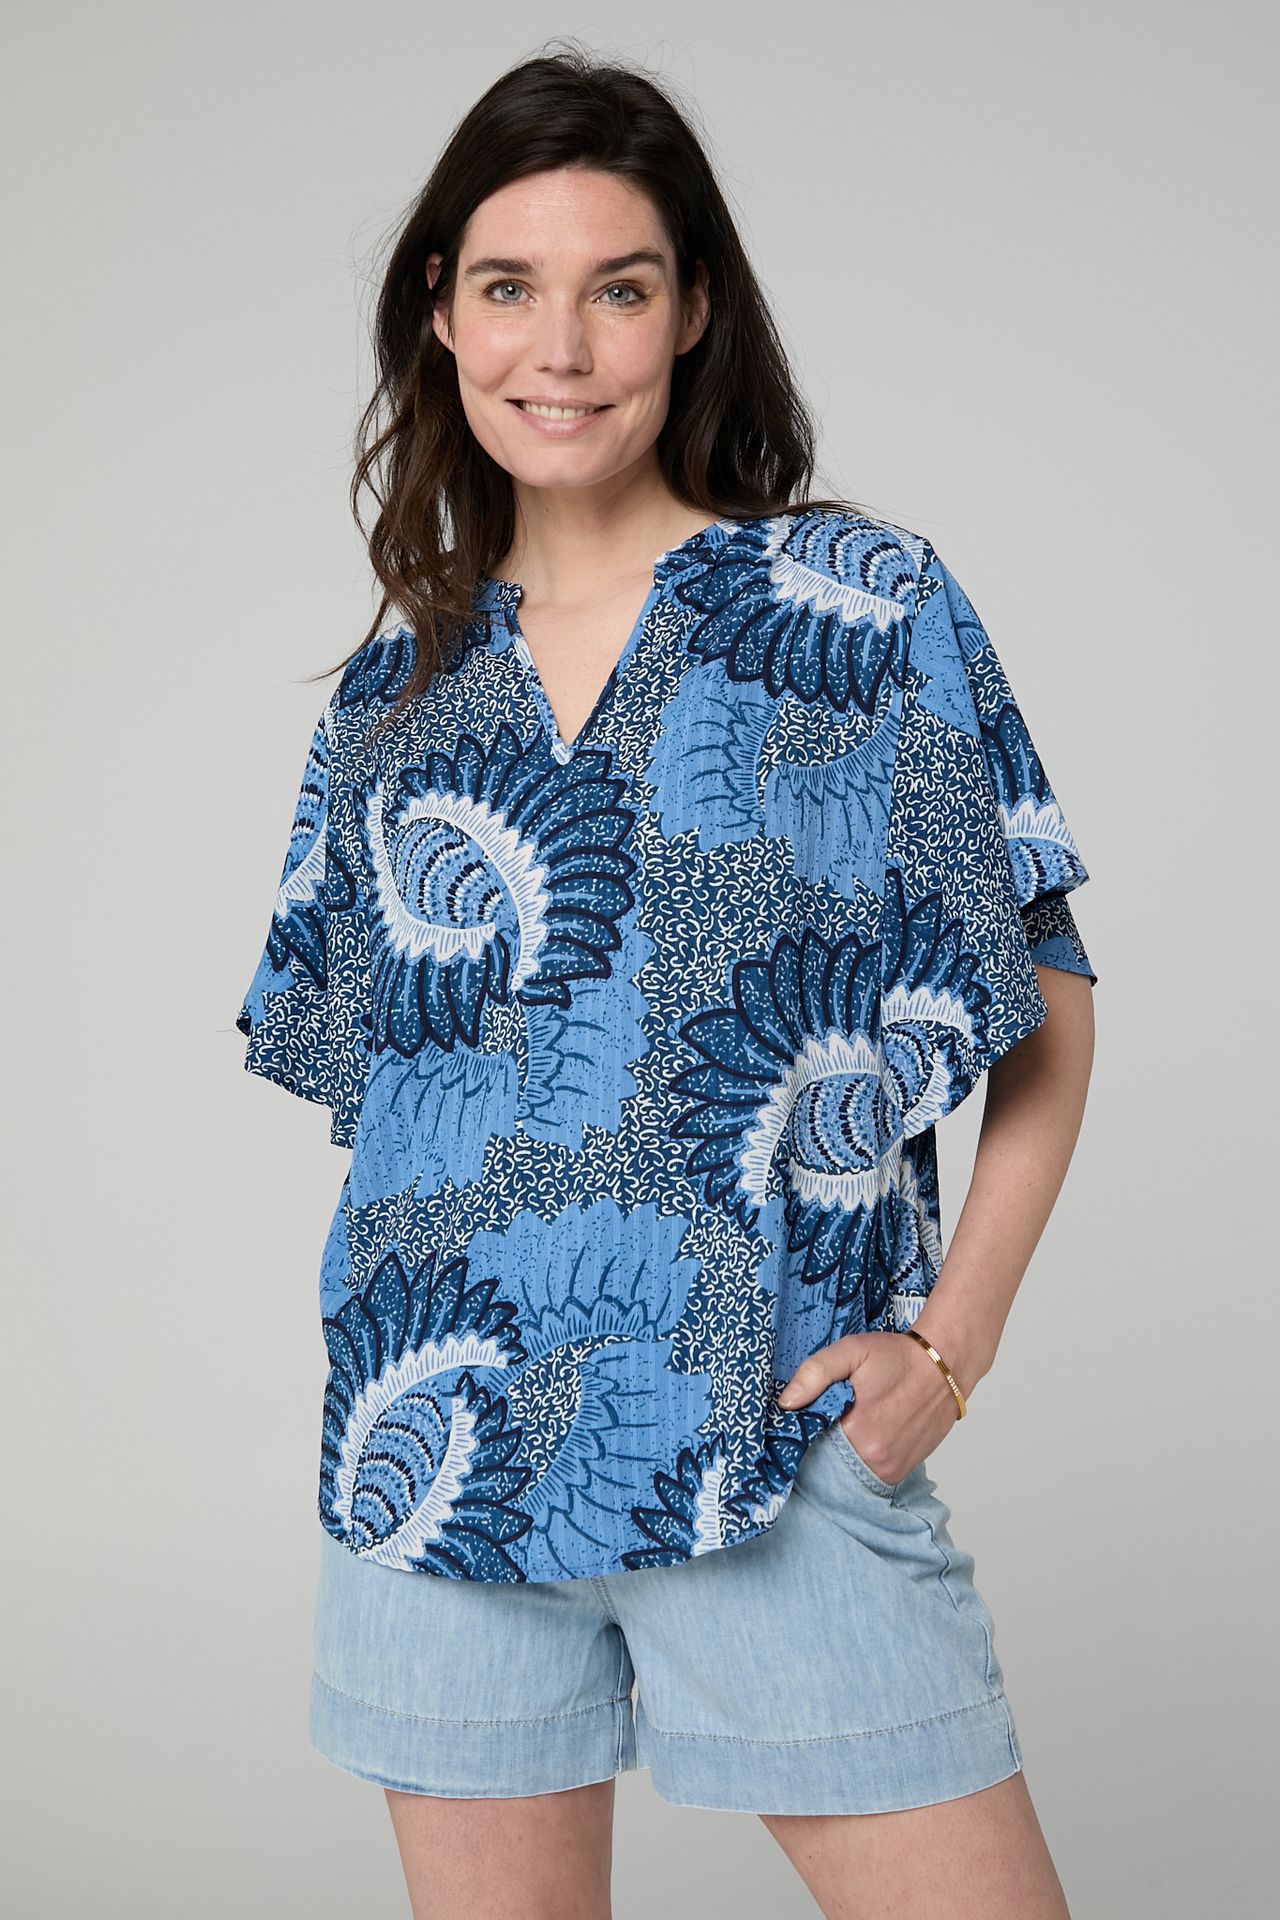 Norah Blauwe blouse blue multicolor 213810-420